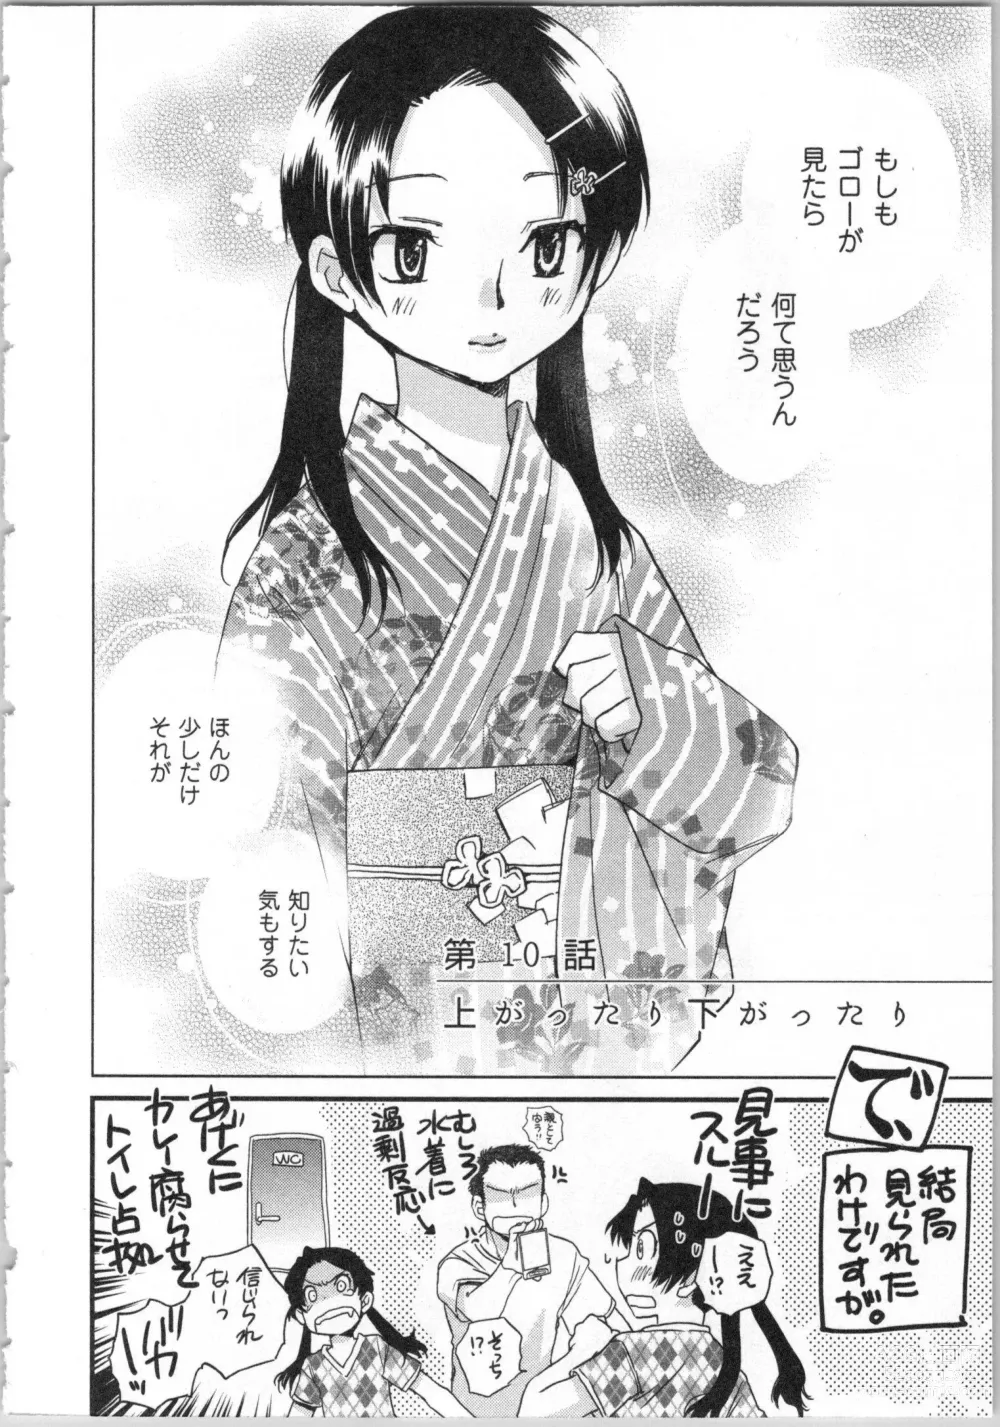 Page 8 of manga Issho ni Kurasu Tame no Yakusoku o Itsuka Vol 2